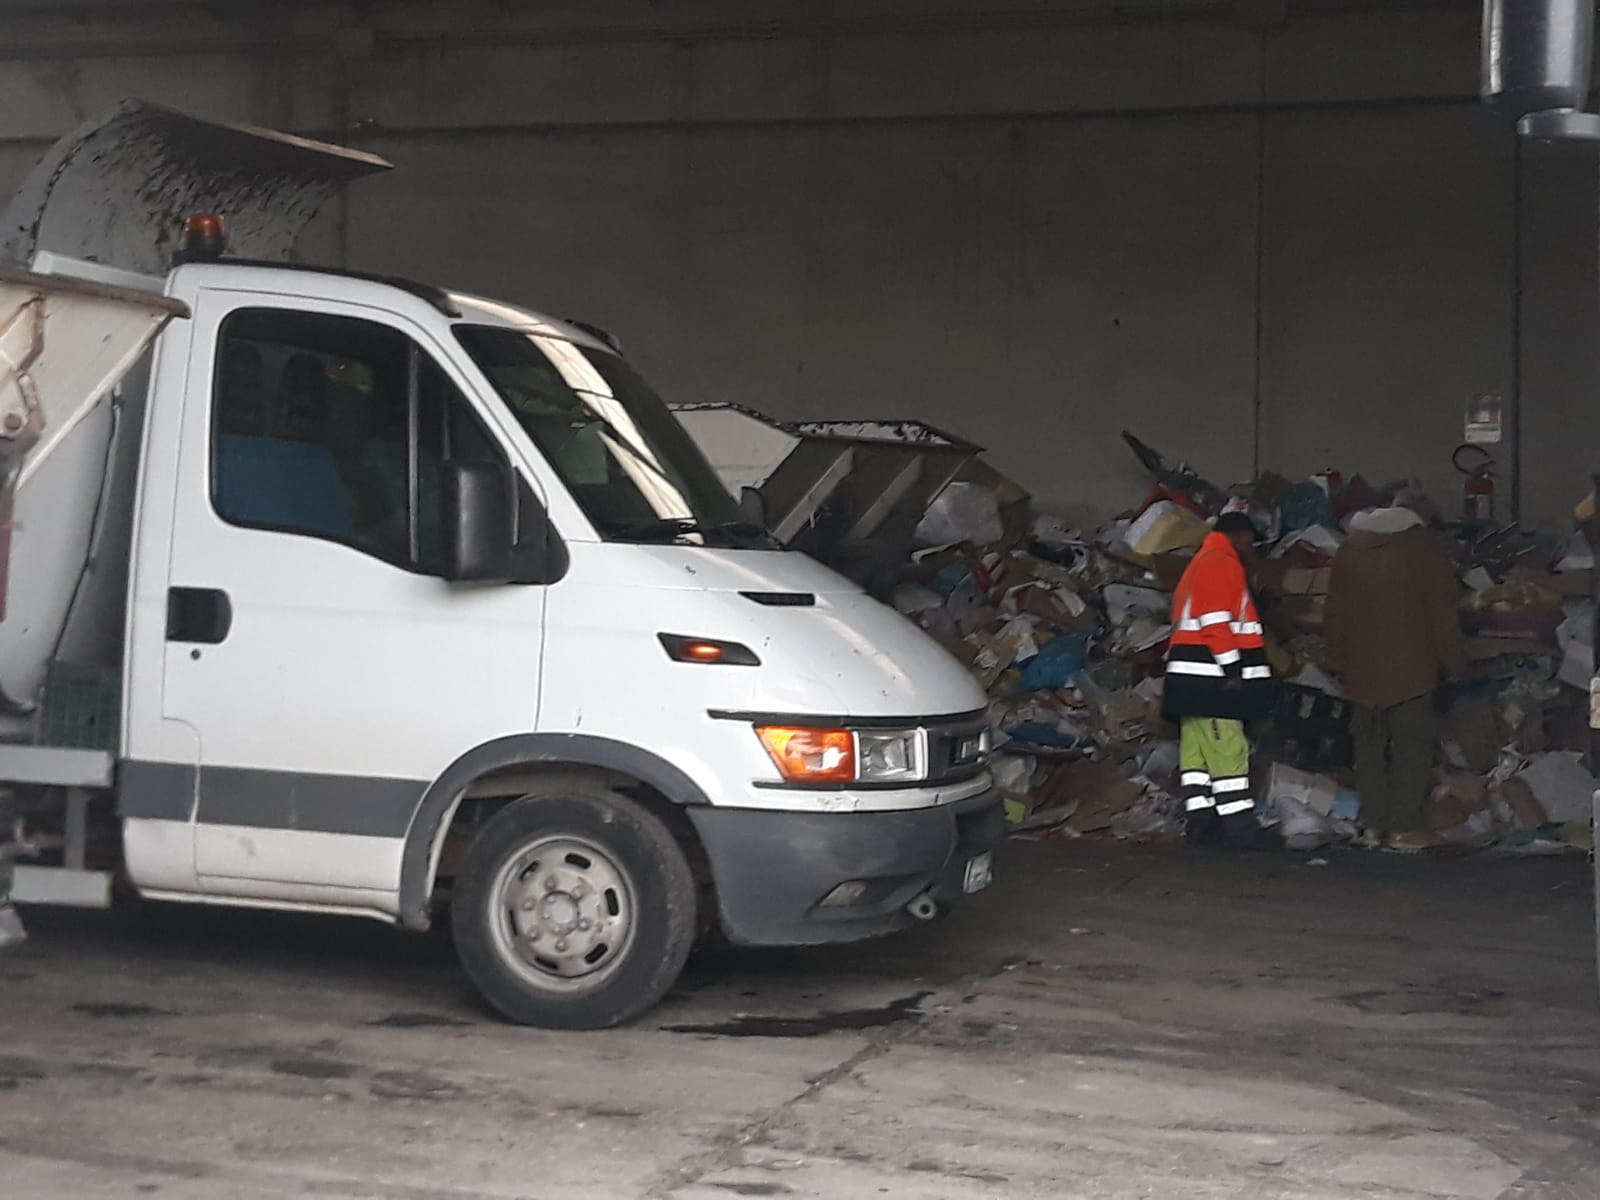 Caos spazzatura a Rosolini, odore di intrallazzi su nuova gara (VIDEO)